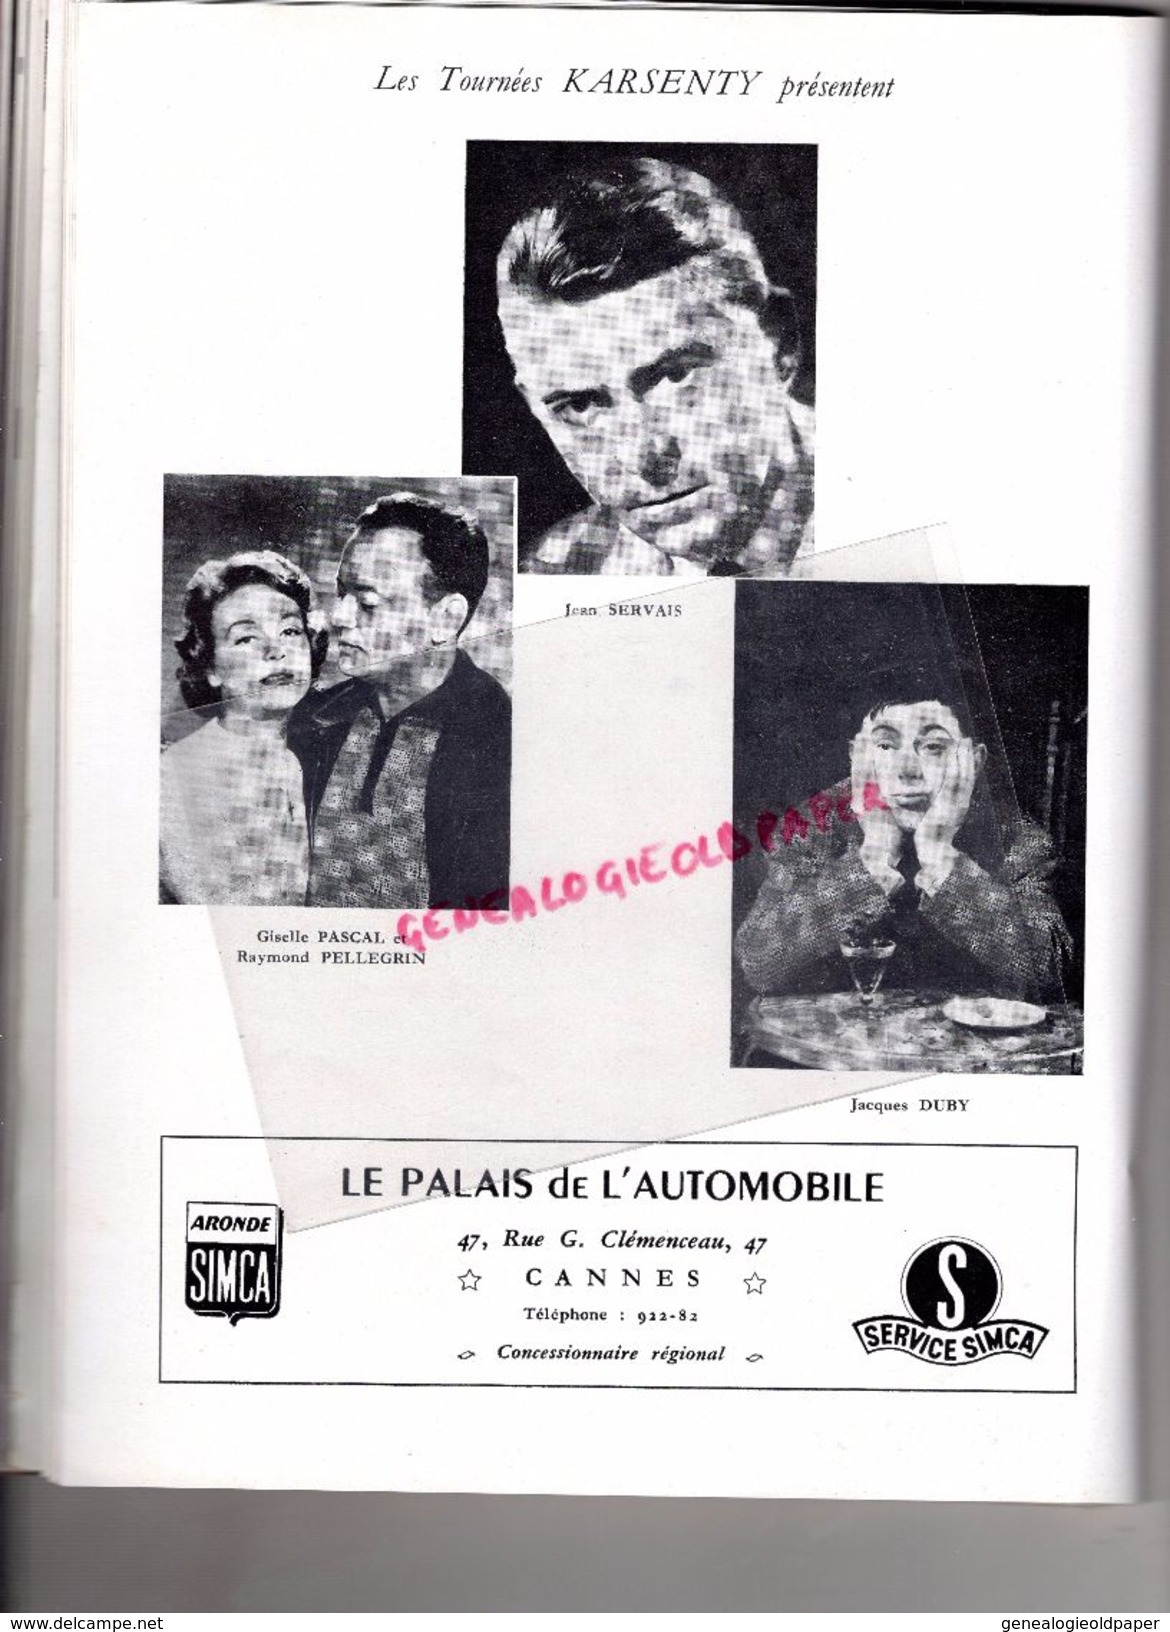 06- CANNES- RARE PROGRAMME CASINO MUNICIPAL--MARCEL HUET-FRENCH LINE-31 DEC.1958-1E JANVIER 1959-MARQUIS CUEVAS-LIFAR-